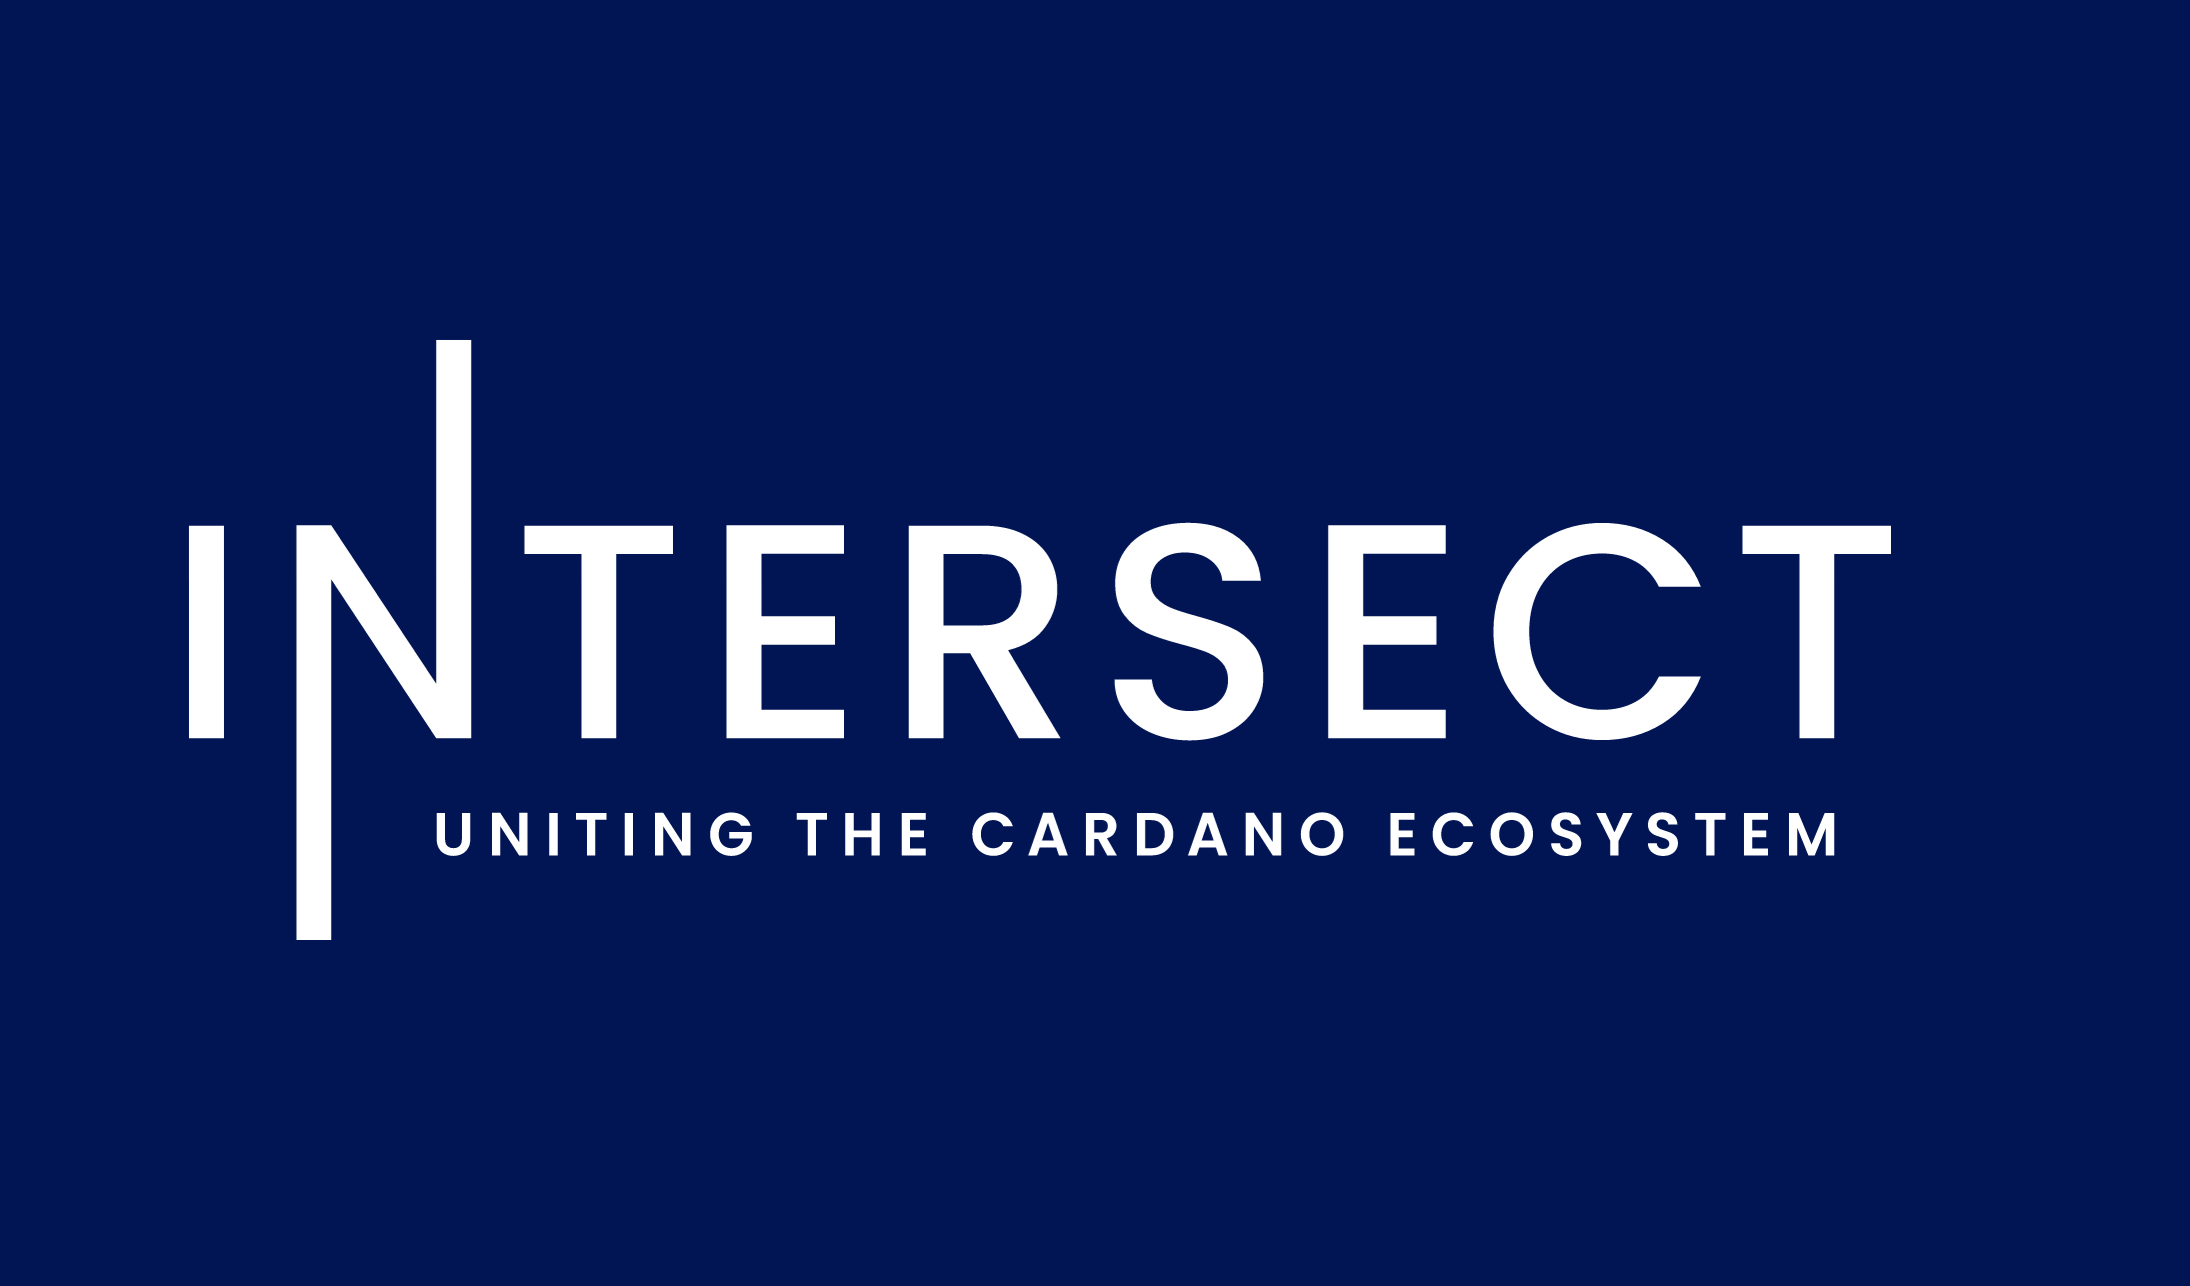 Cardanoエコシステムのメンバーベース組織「Intersect」が 発足